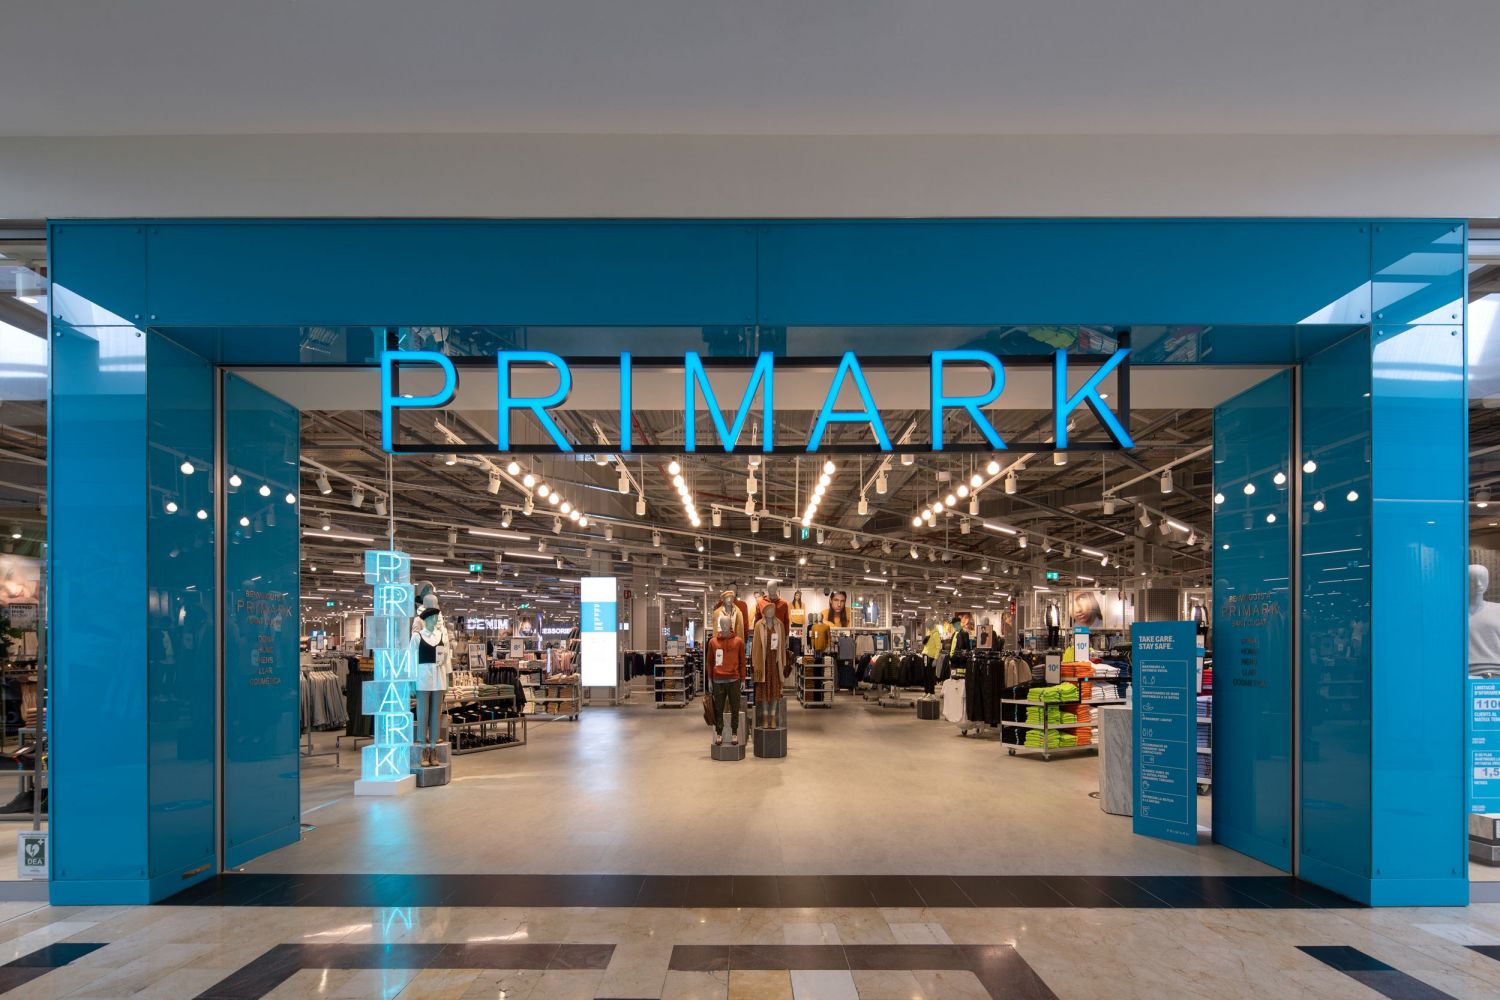 Así es el arriesgado futuro de Primark: tiendas físicas, ‘low cost’ y rechazo online